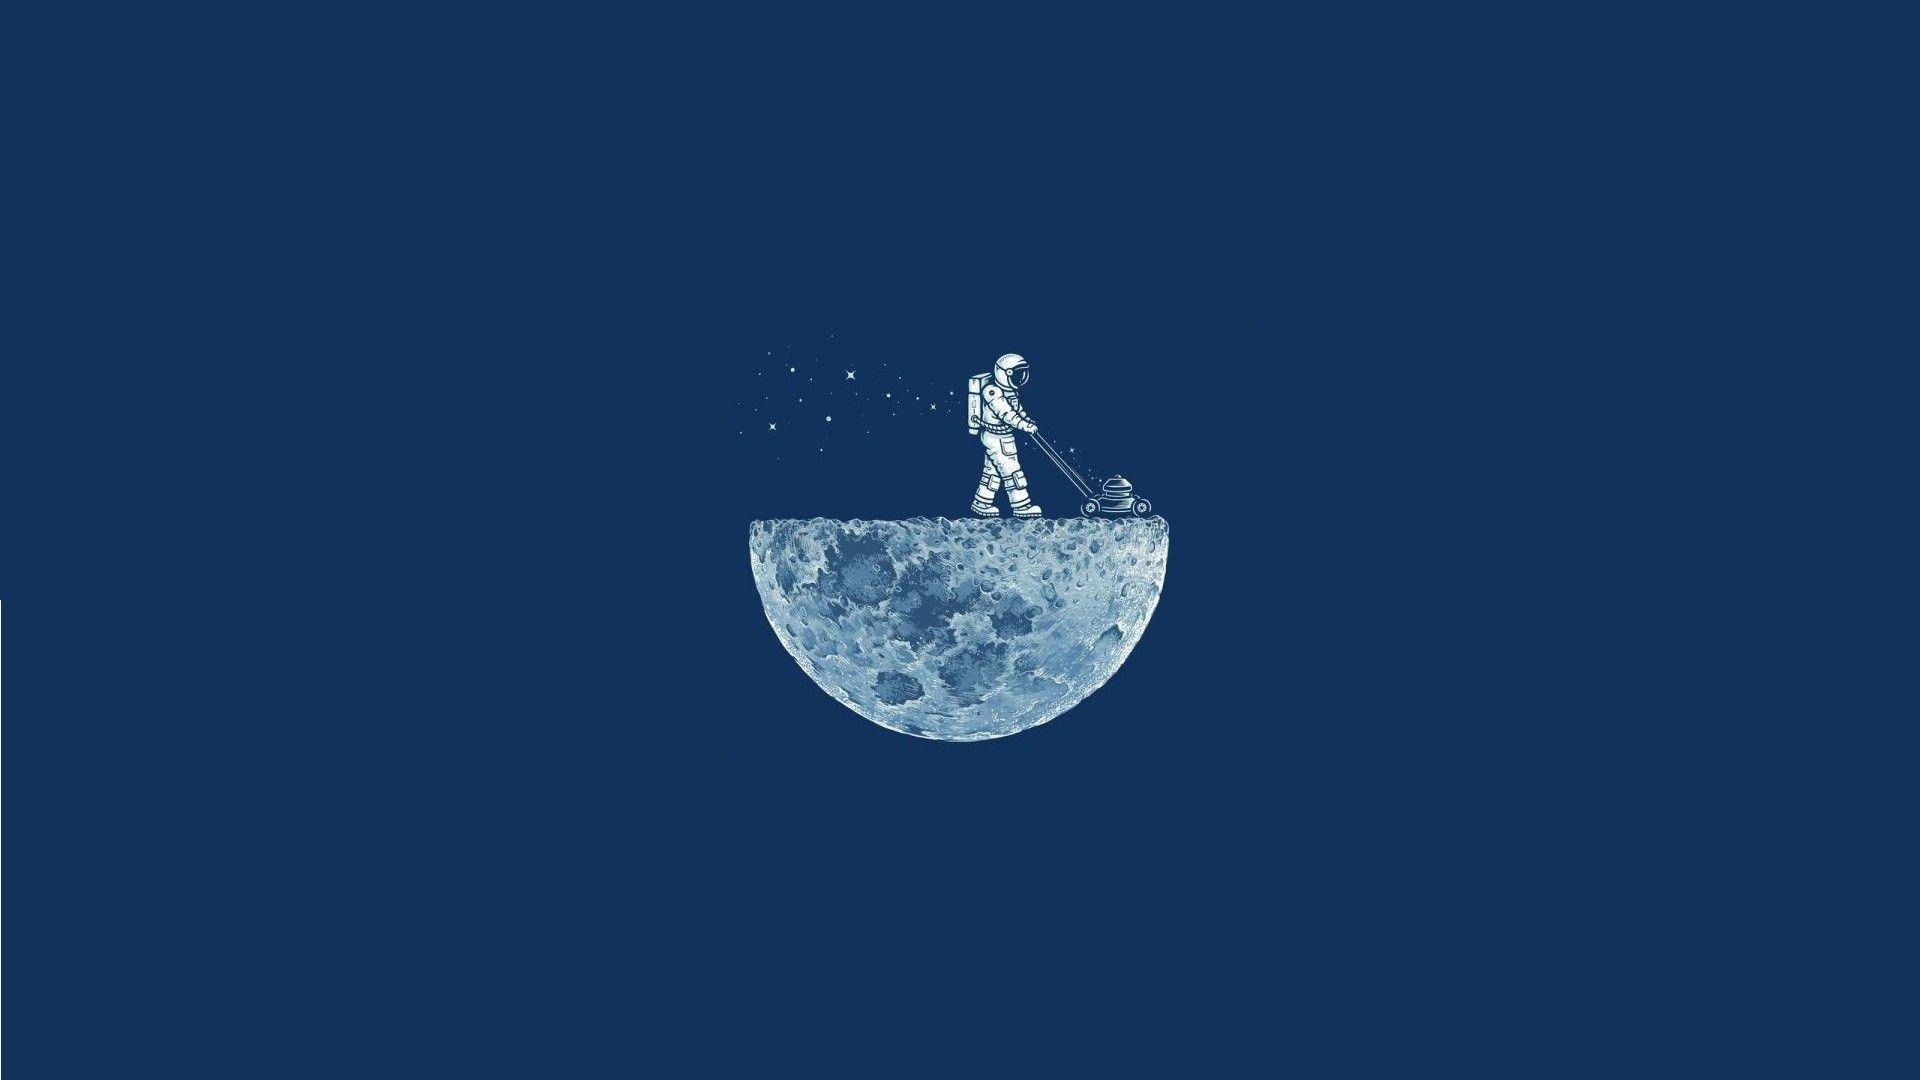 1920x1080 Hình nền Minh họa Phi hành gia Mặt trăng.  DigitalArt.io